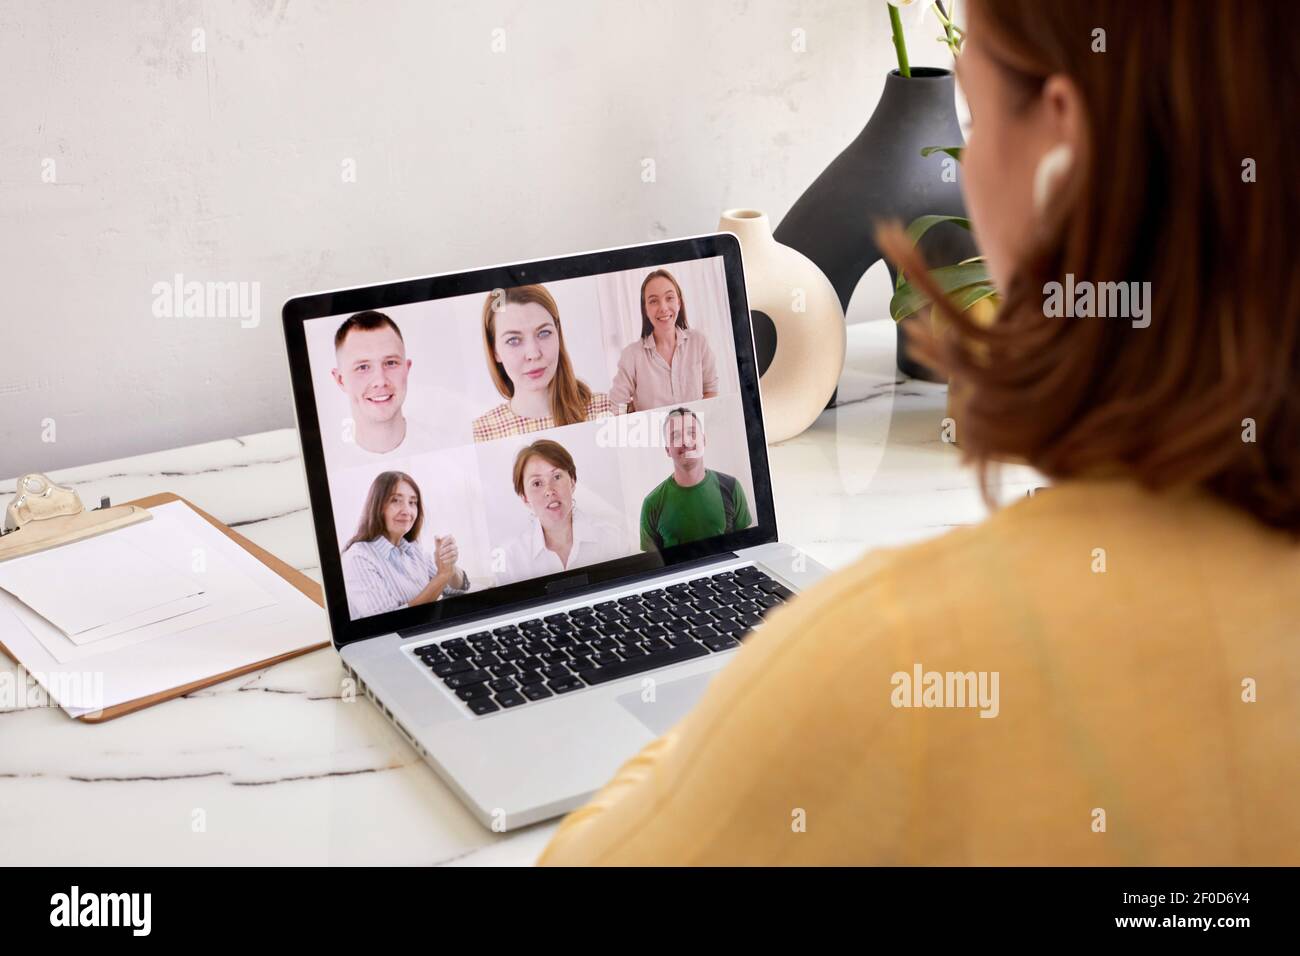 Giovane donna parlare in videochiamata su laptop, ragazza millennial riposo seduta parlare chat con i colleghi, avere conferenza webcam, concetto di tecnologia Foto Stock